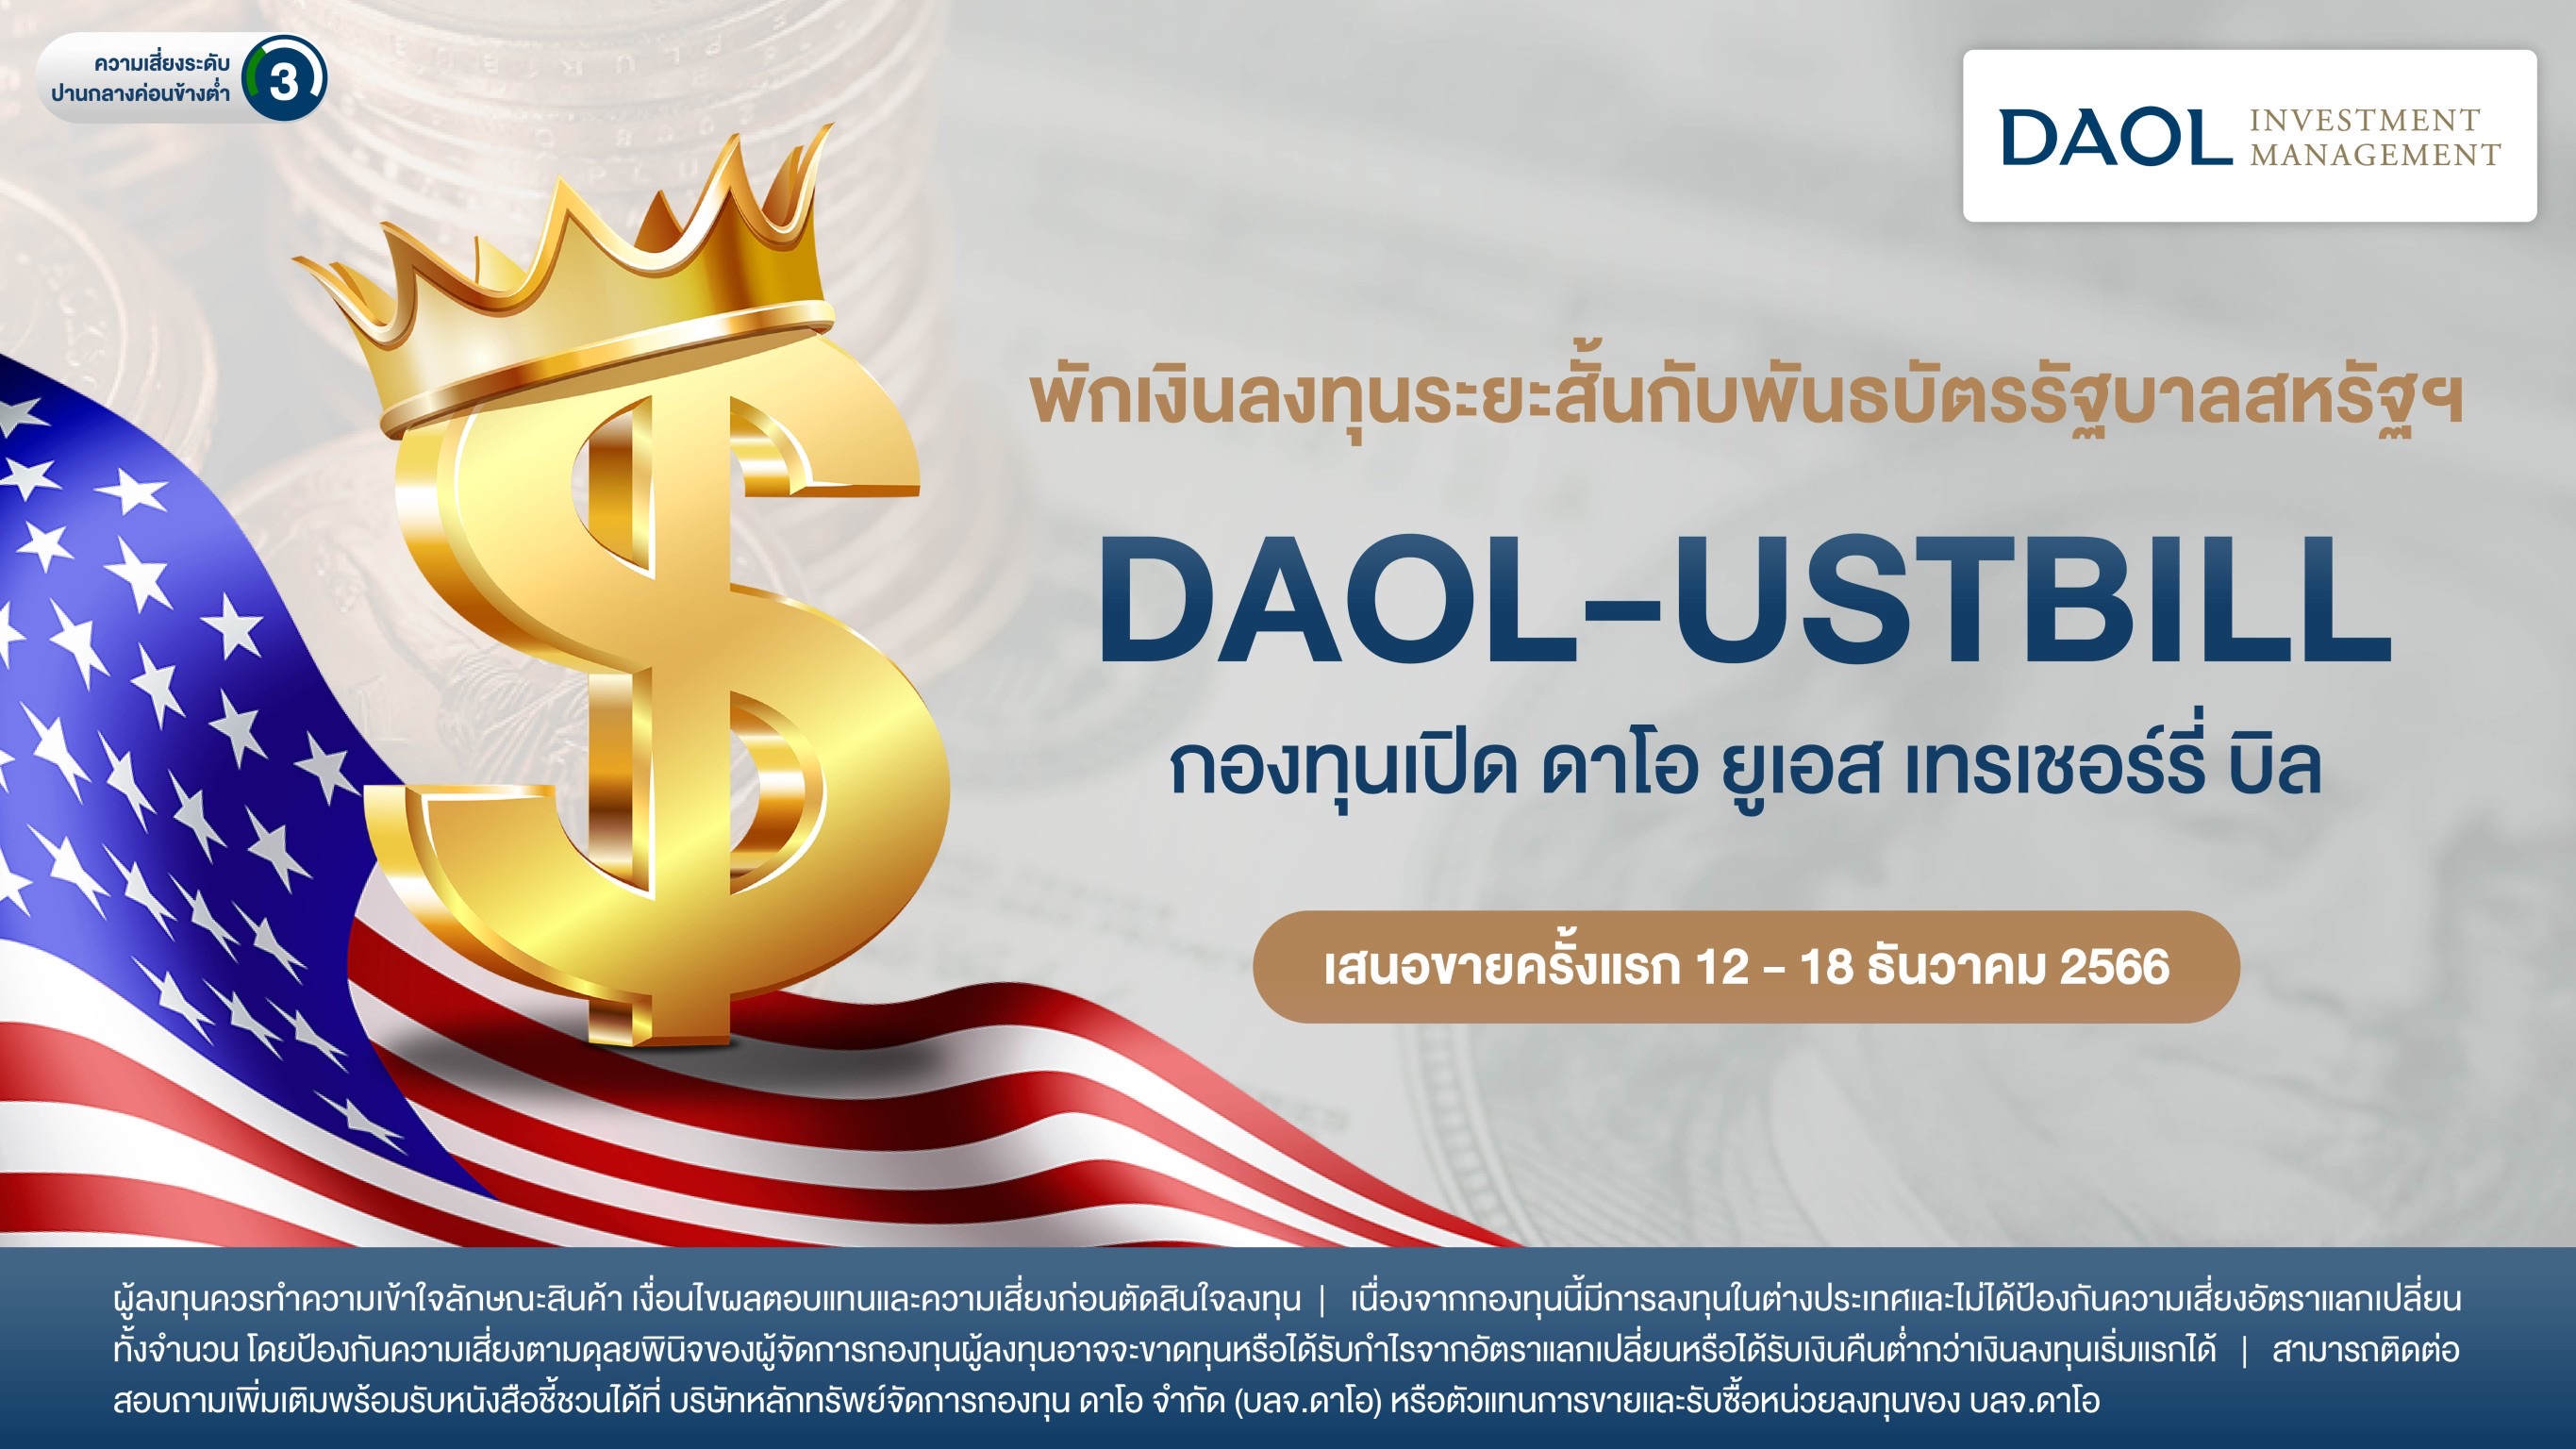 บลจ.ดาโอ  เปิดขาย IPO ‘DAOL-USTBILL’  พันธบัตรรัฐบาลสหรัฐฯ ชูผลตอบแทนสูง หลบความผันผวน